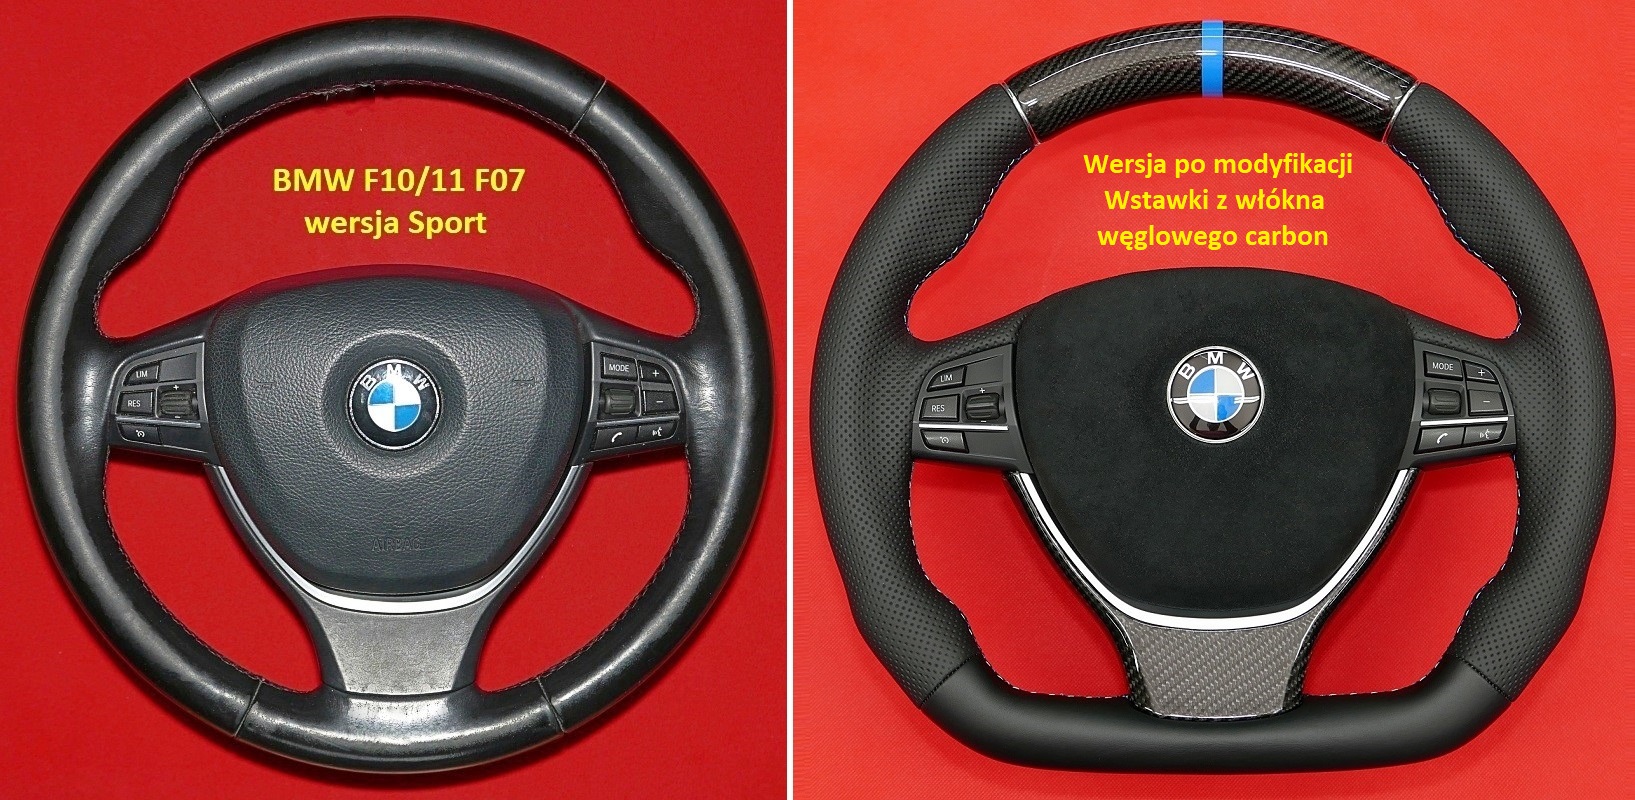 Kierownica BMW F10 F12 F13 włókno węglowe carbon tuning, tuning modyfikacja zmiana kształtu kierownic włókno węglowe carbon